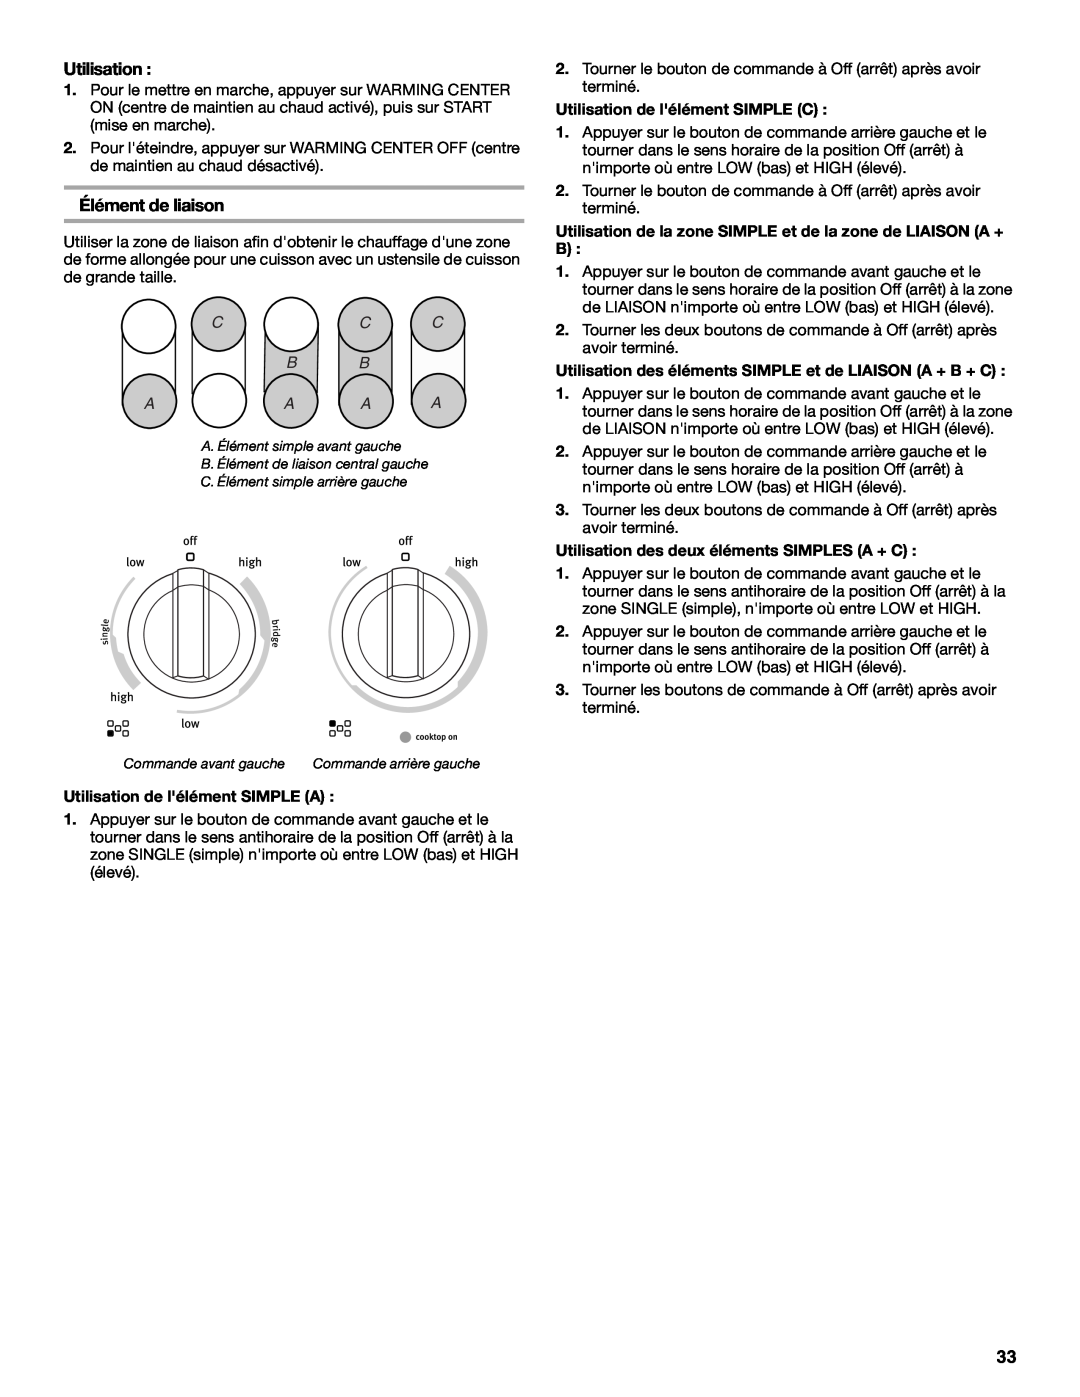 Maytag W10345638A manual Élément de liaison, Utilisation de lélément SIMPLE A, Utilisation de lélément SIMPLE C 